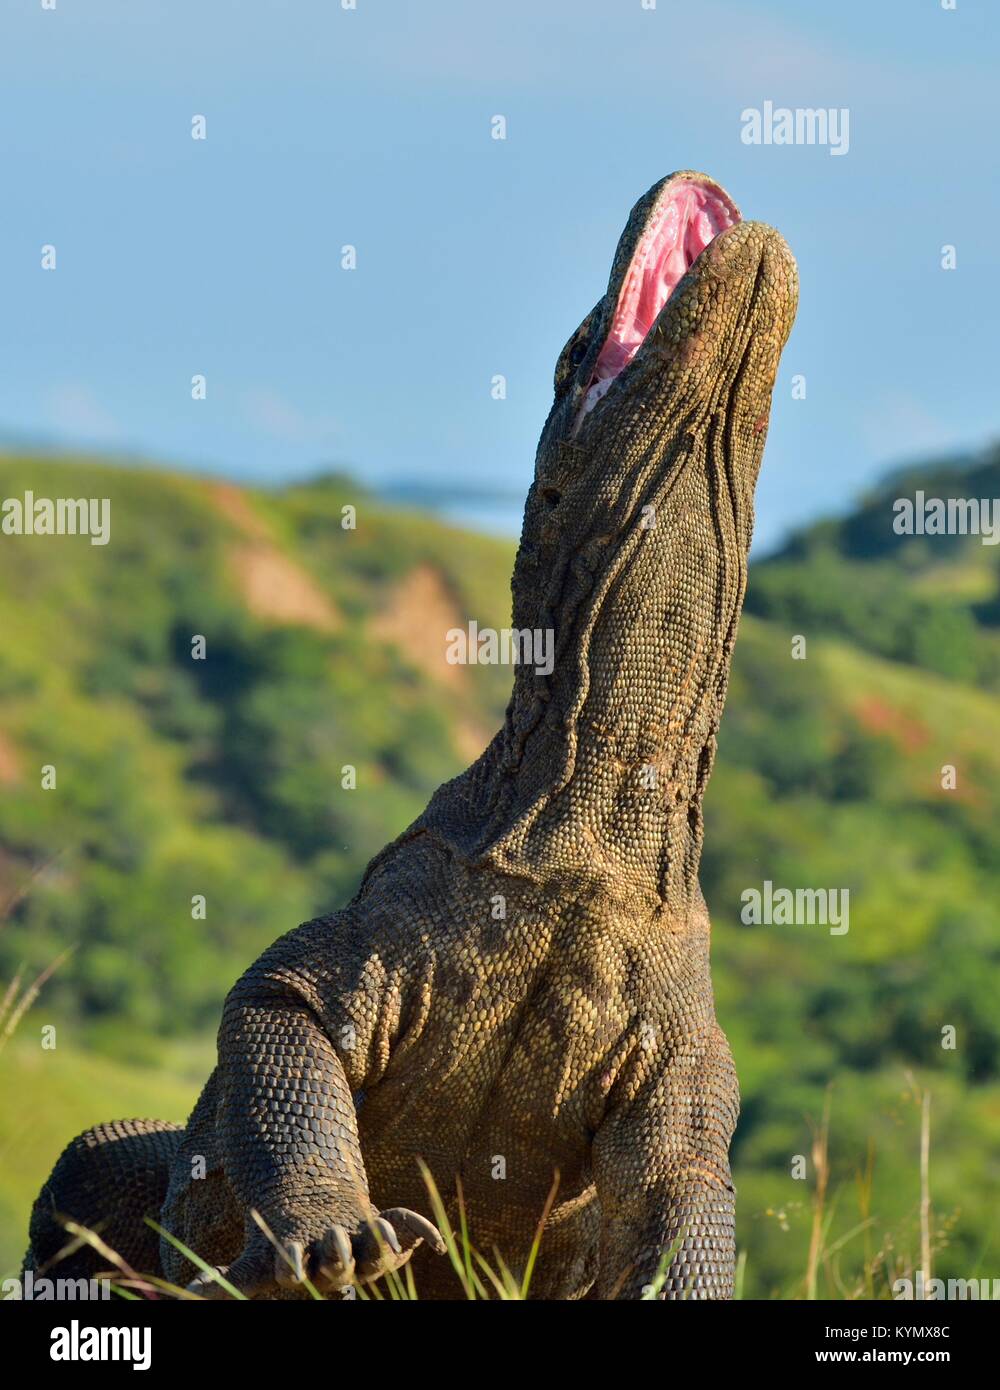 Il drago di Komodo (Varanus komodoensis ) ha sollevato la testa e ha aperto una bocca. È la più grande lucertola vivente nel mondo. Isola Rinca. Indonesia. Foto Stock